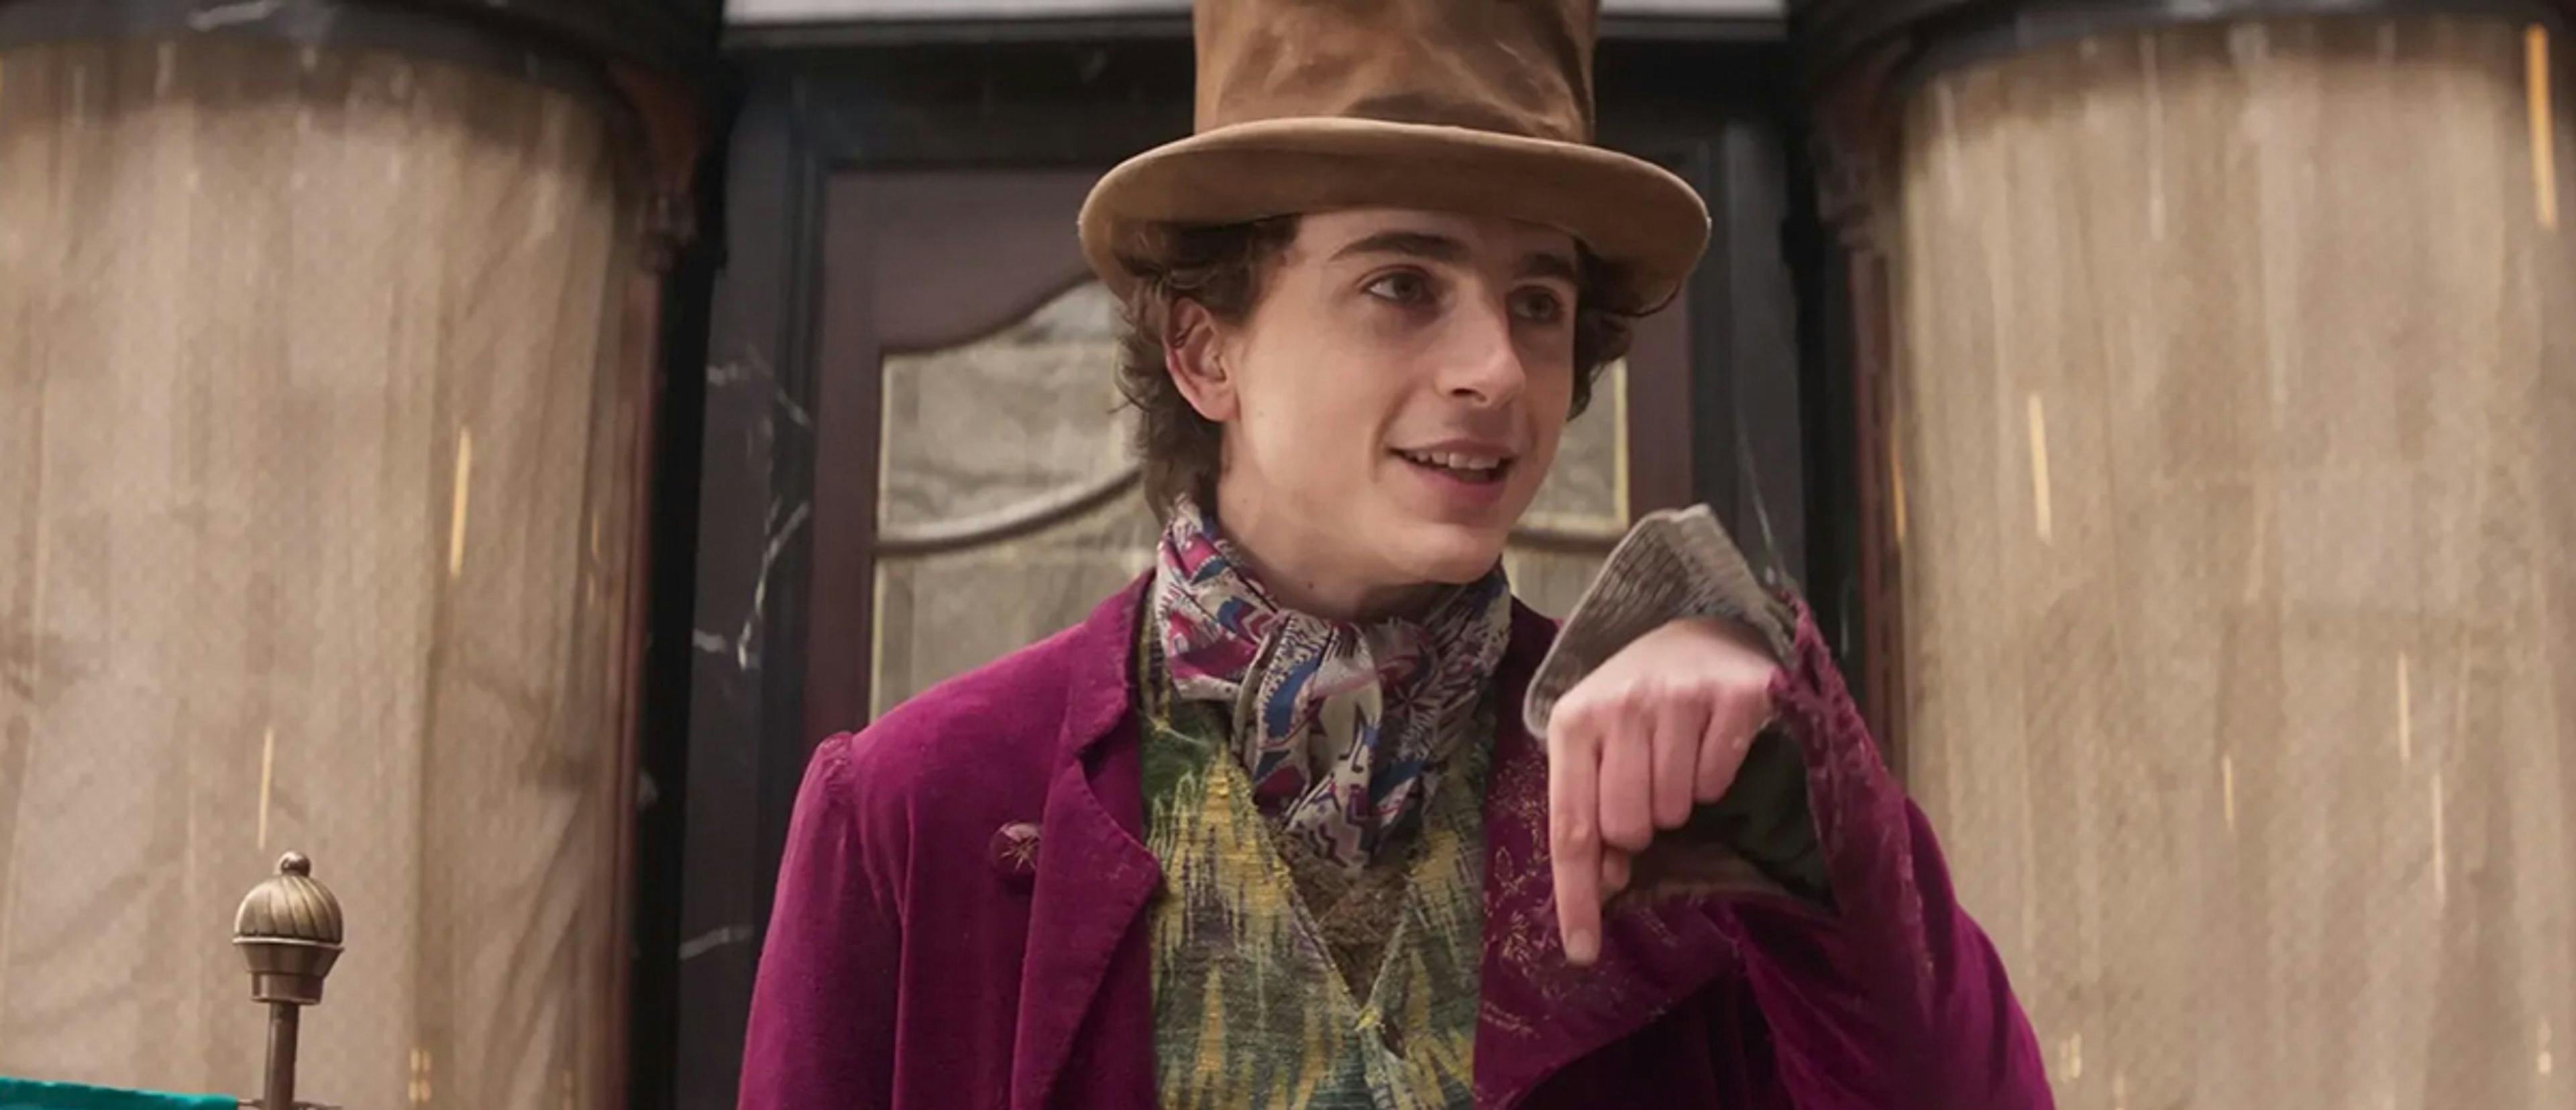 El actor Timothée Chalamet, en una imagen promocional de la película 'Wonka'